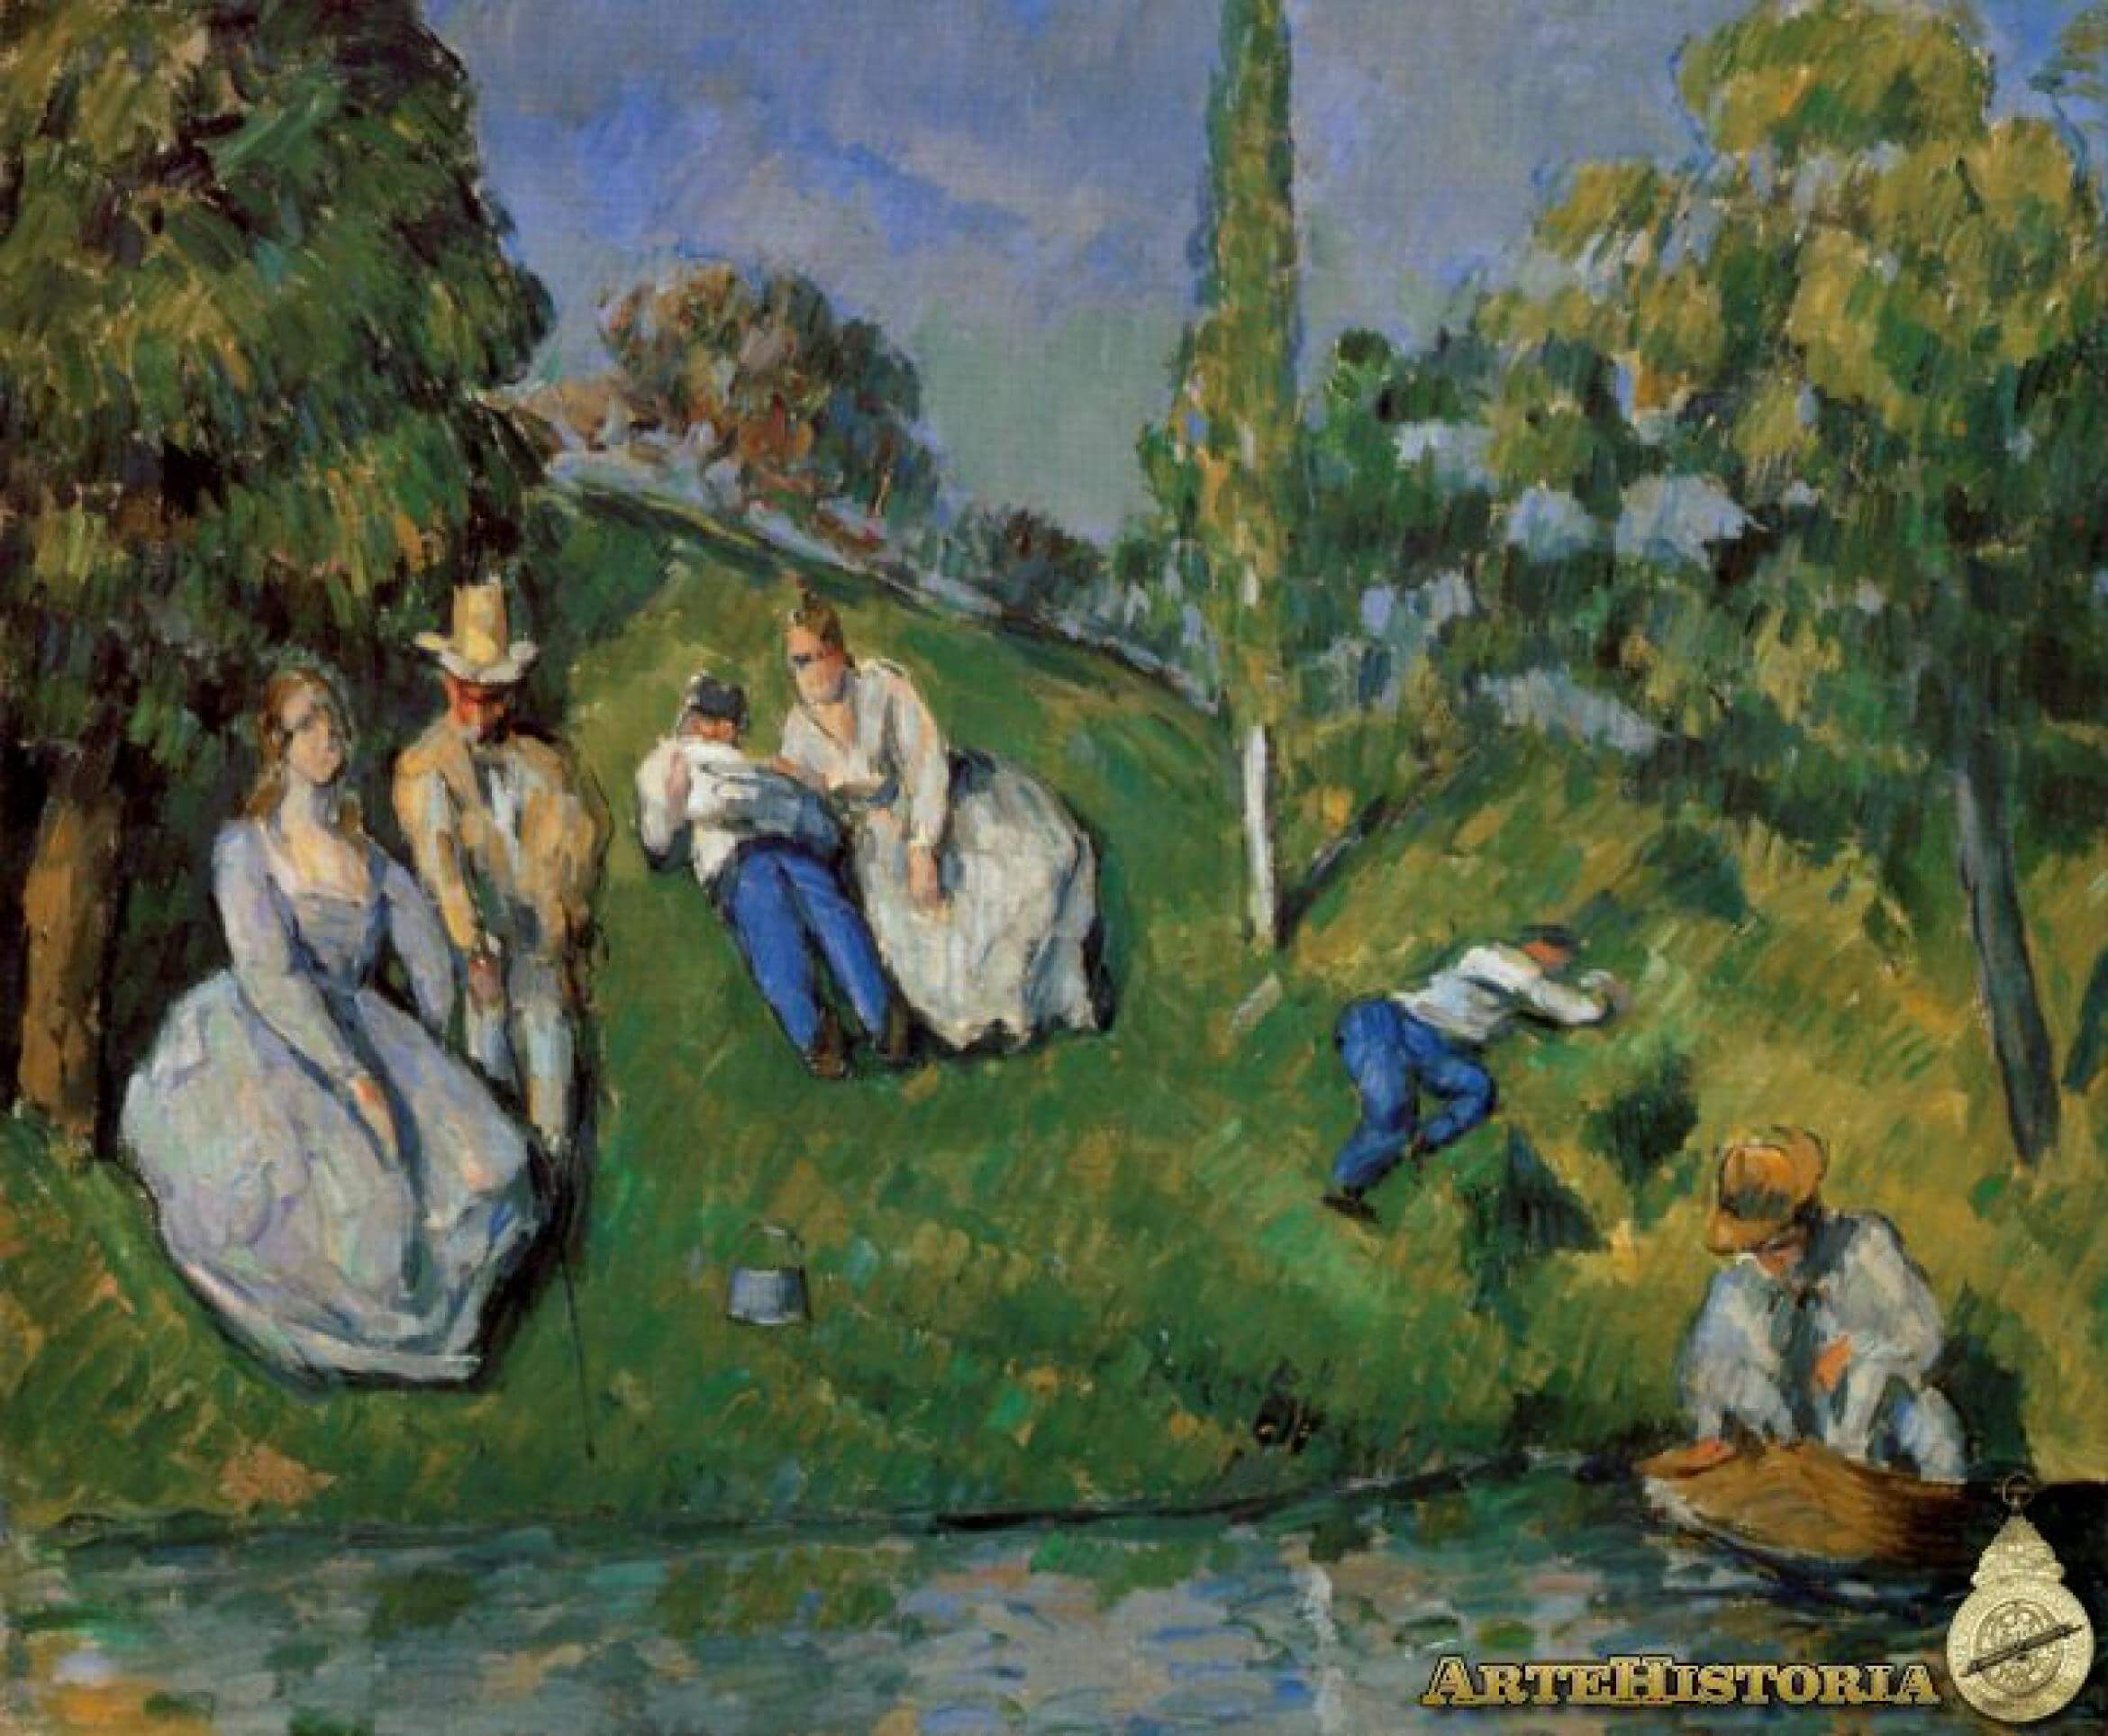 Obras del impresionismo - El Estanque - Cezanne